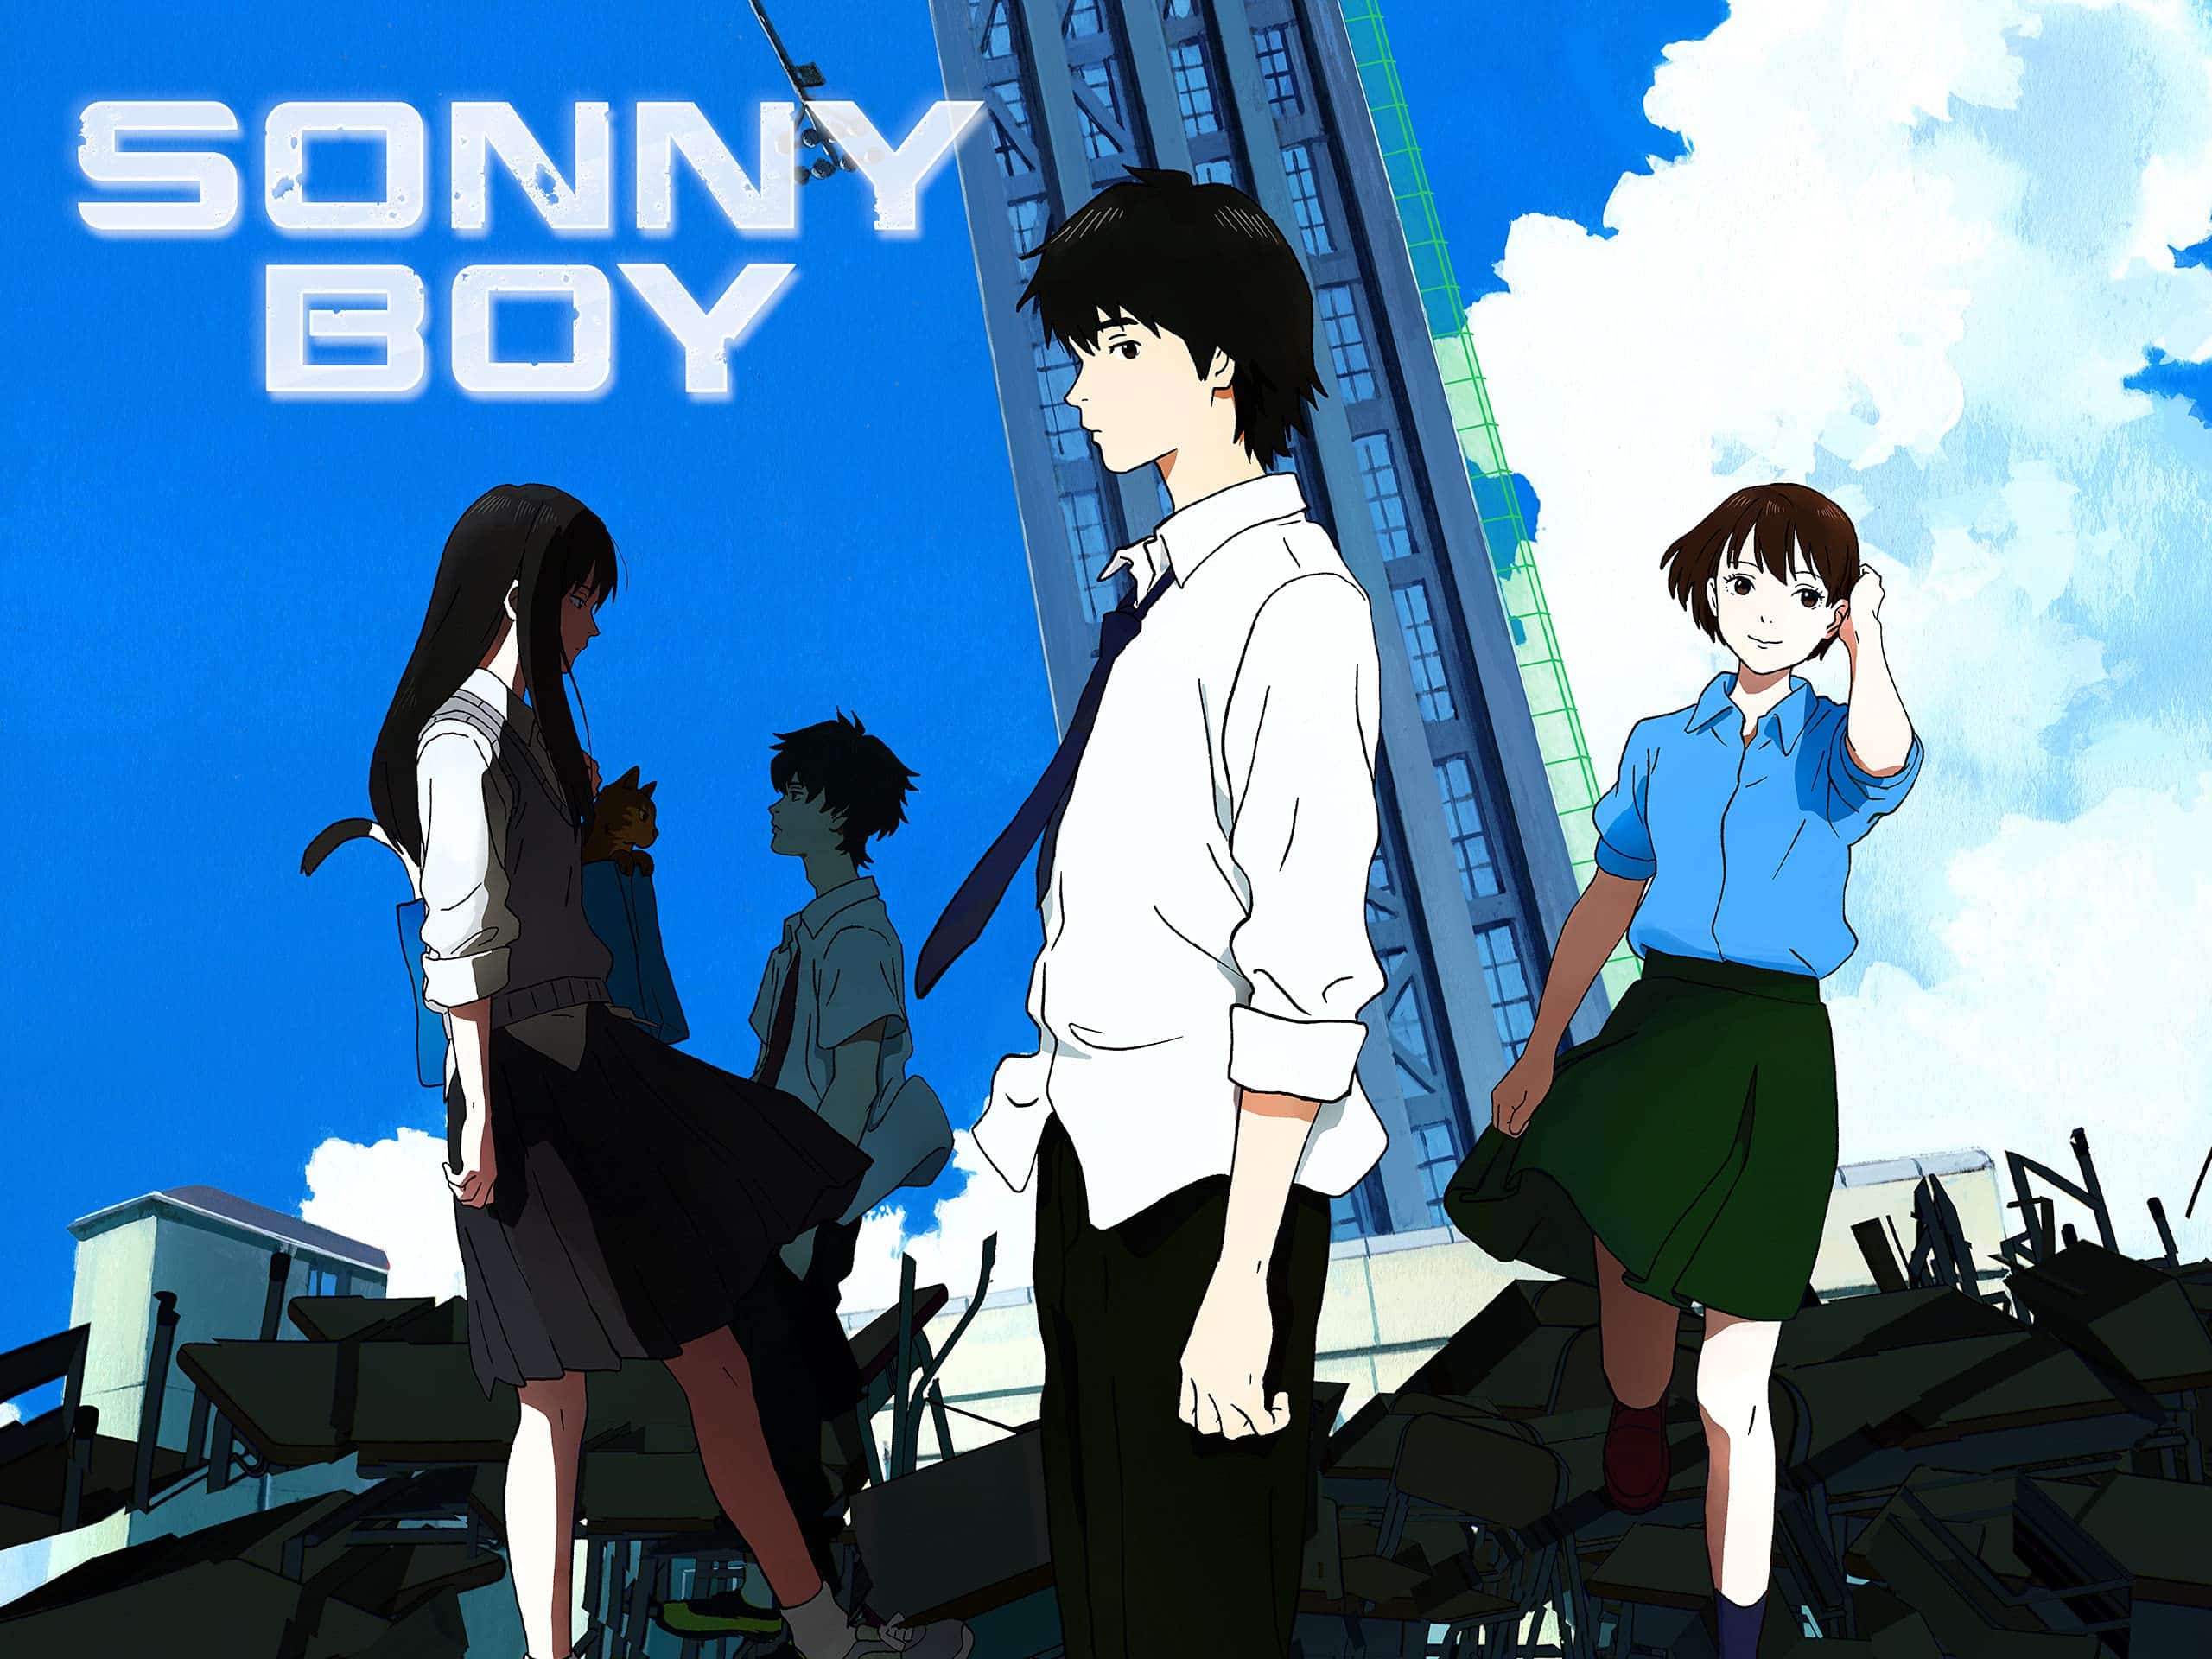 The Cast of Sonny Boy Best Anime on Hulu